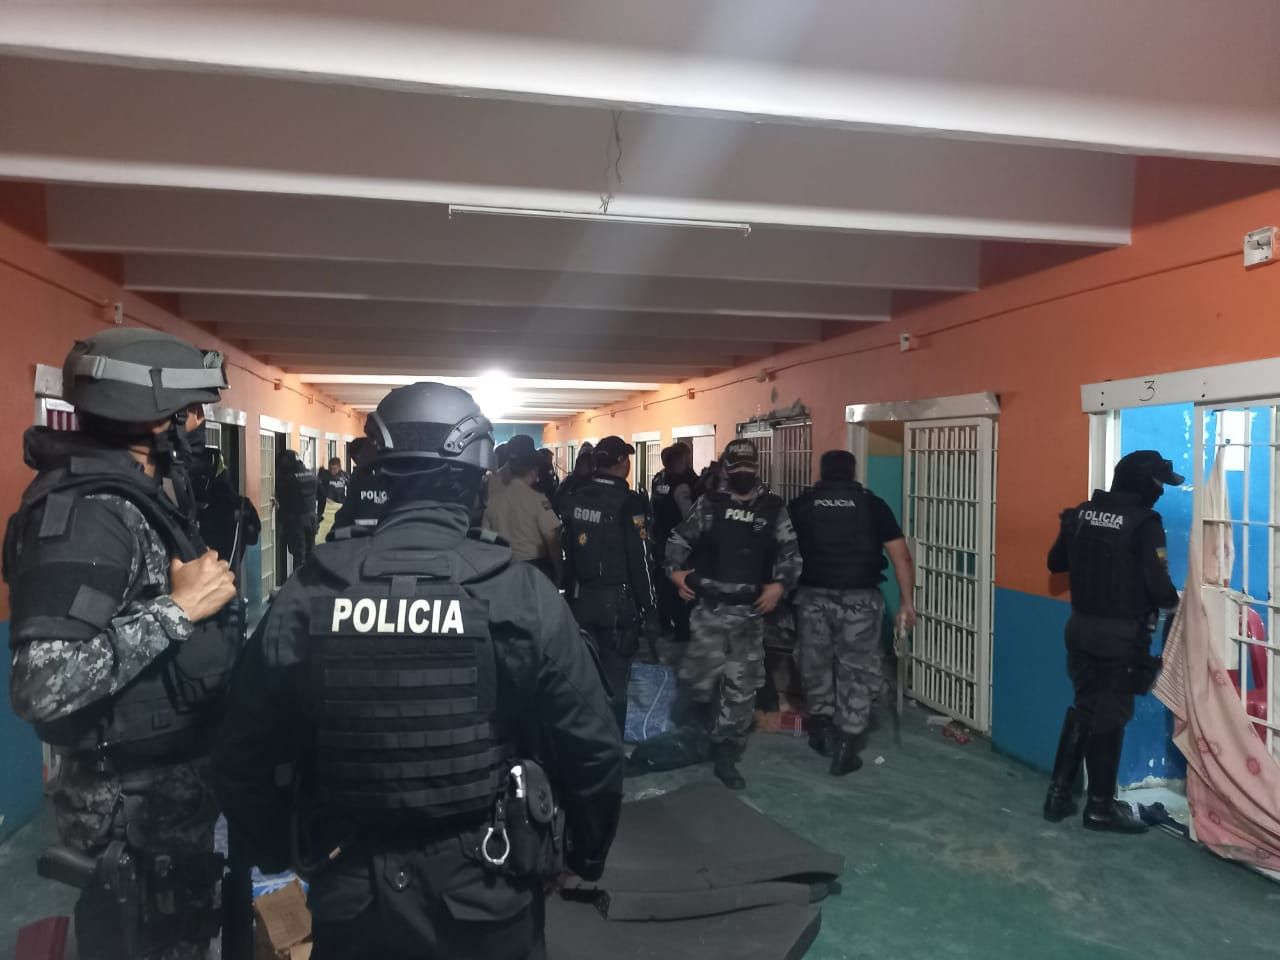 Policías armados en una prisión de Guayaquil (Ecuador)